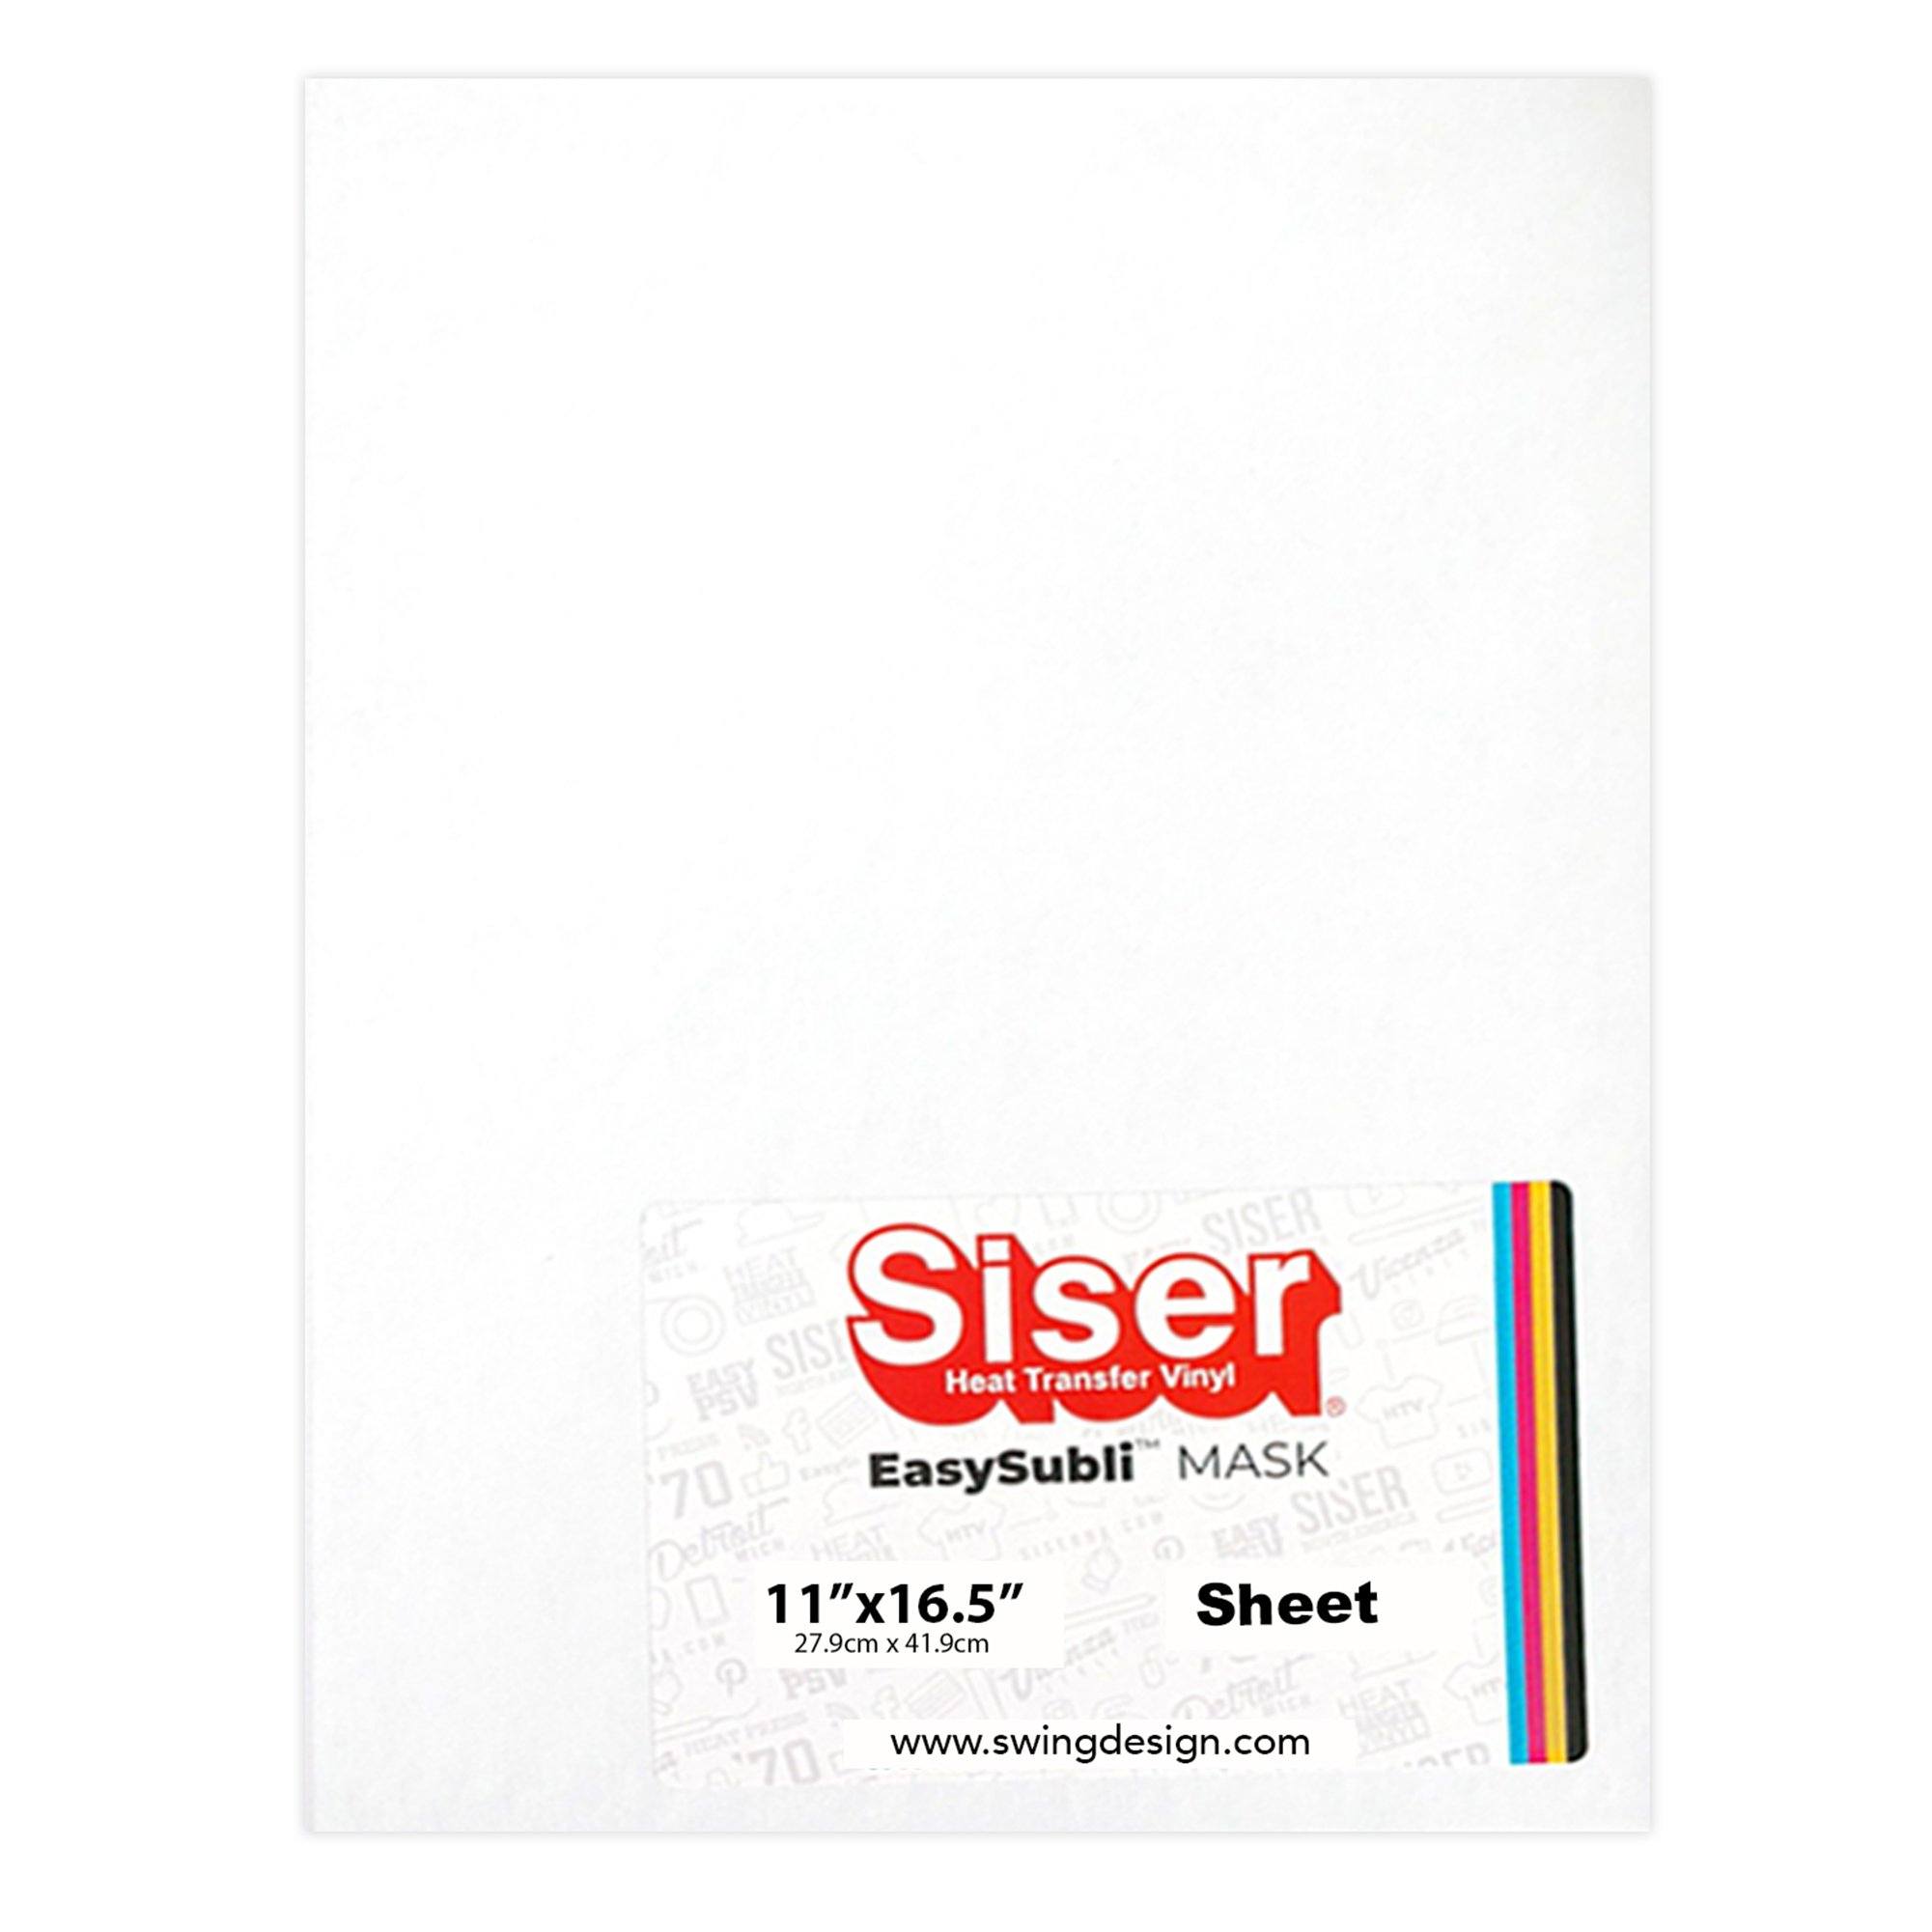 Siser EasySubli Heat Transfer Vinyl Sheets